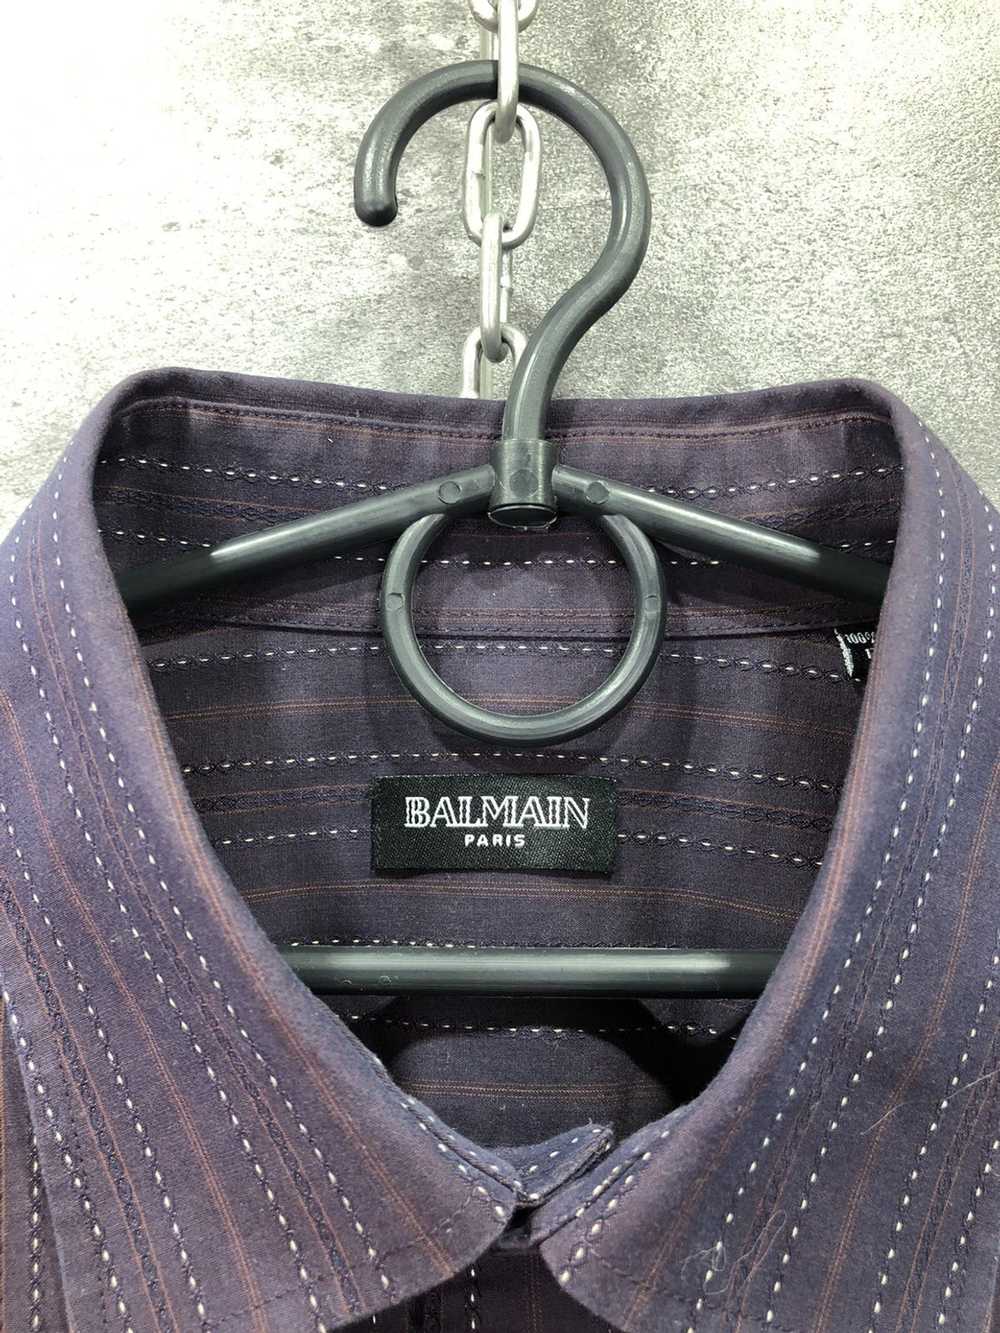 Balmain Vintage Balmain Paris Button Up Shirt siz… - image 2